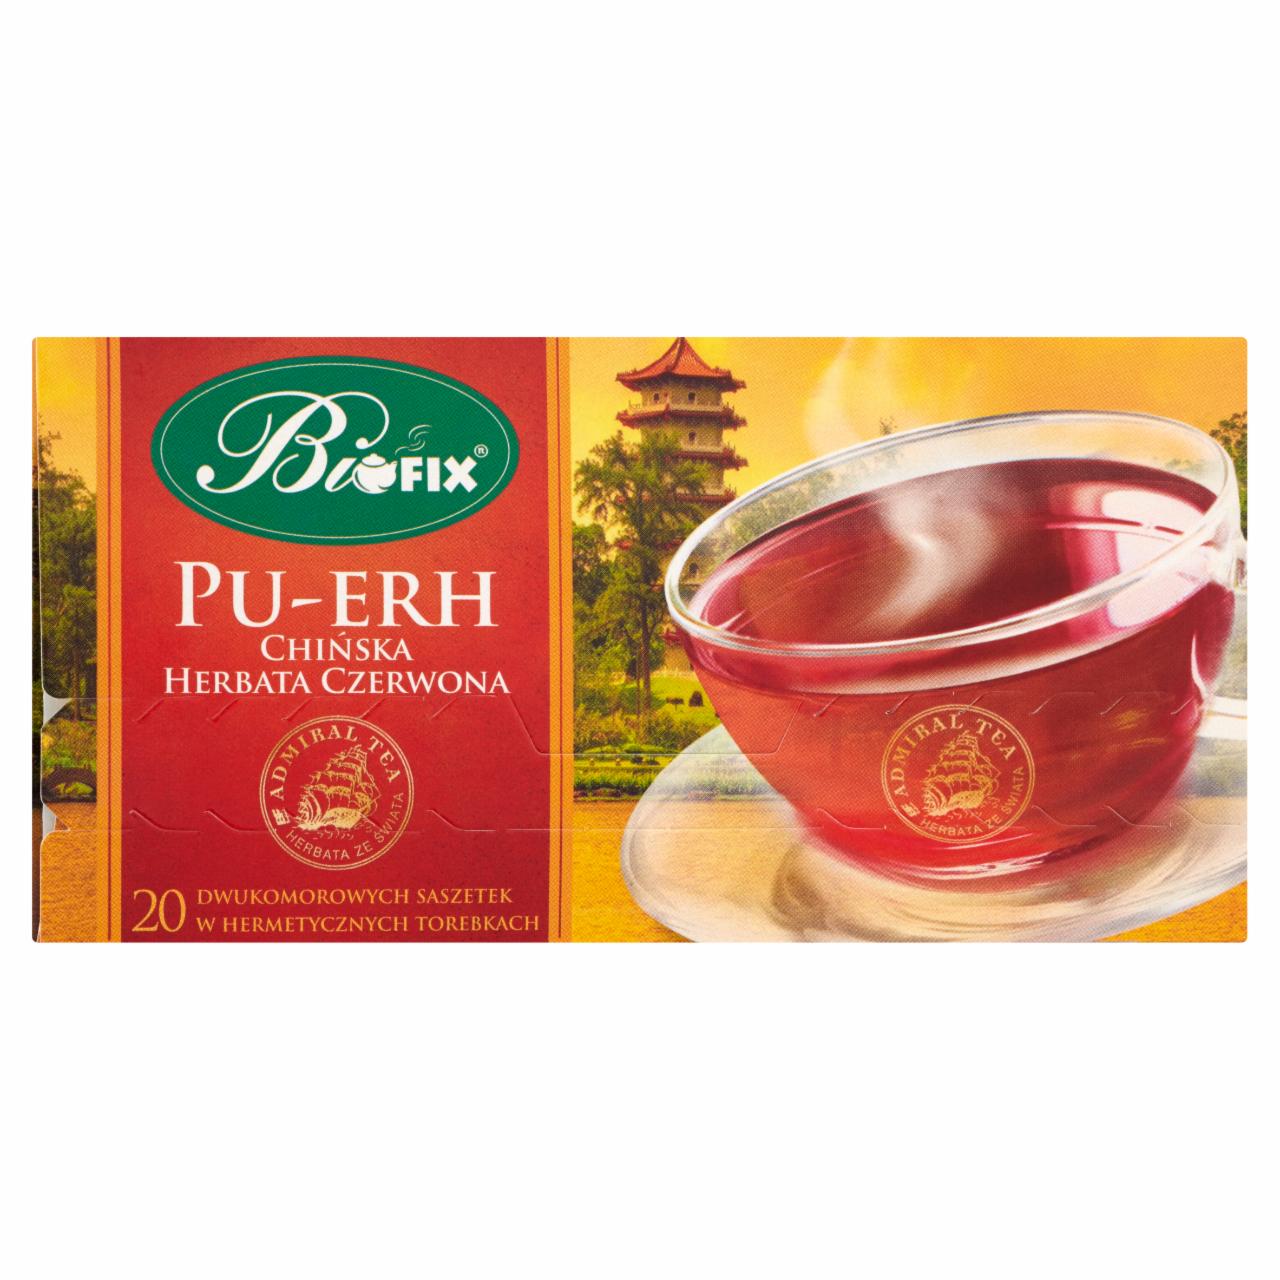 Zdjęcia - Bifix Admiral Tea Pu-Erh Chińska herbata czerwona 40 g (20 saszetek)